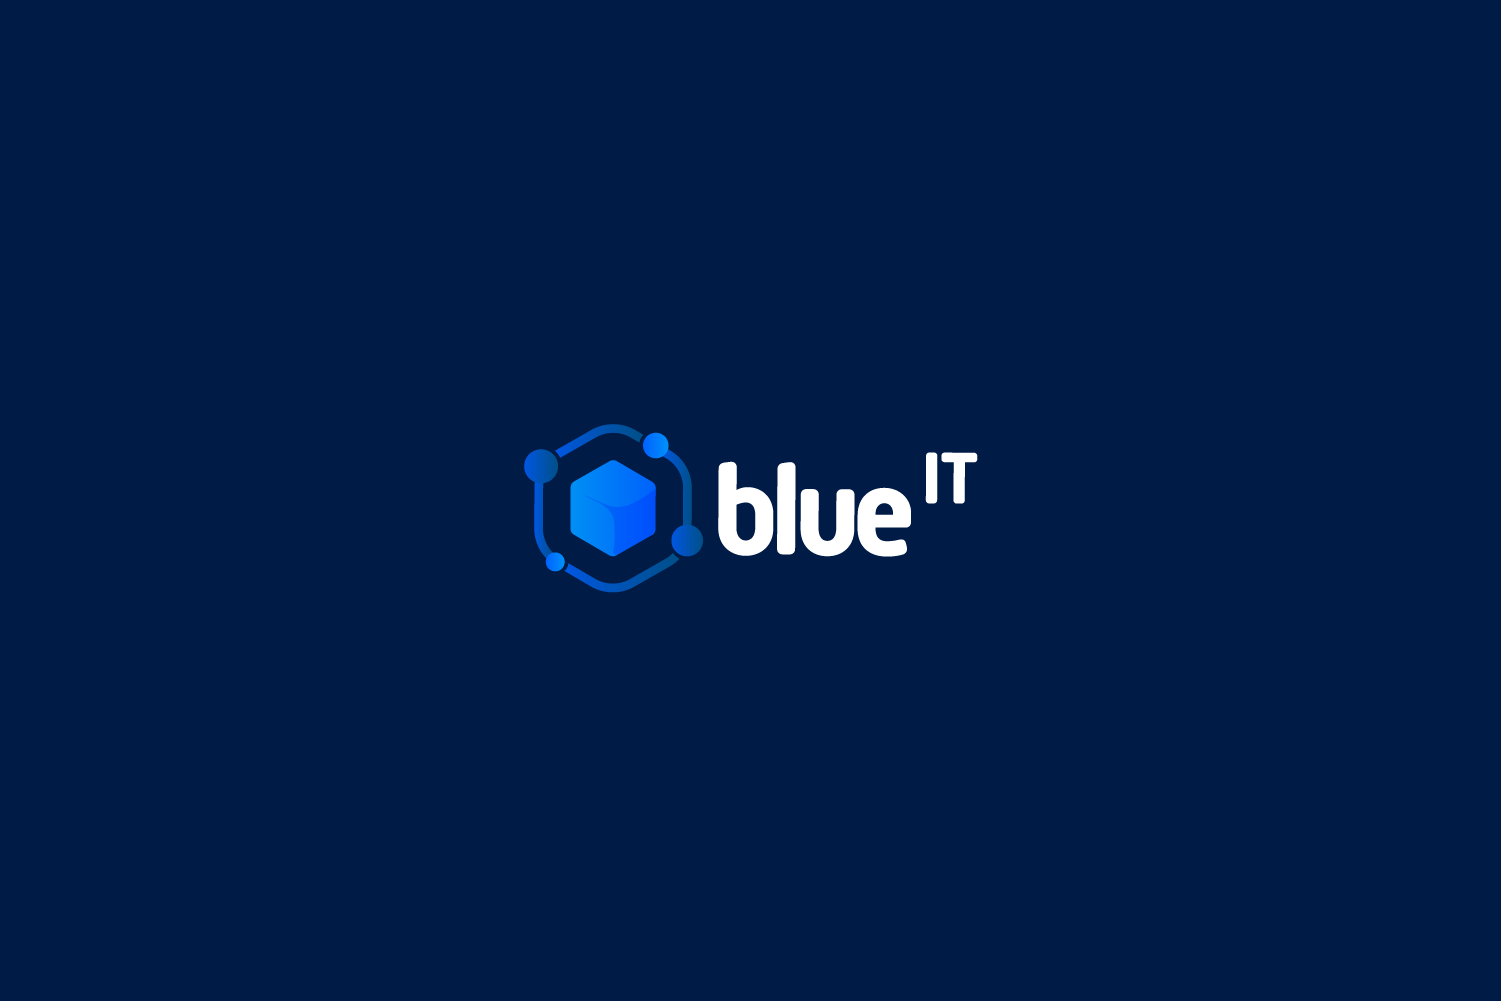 logo blue it